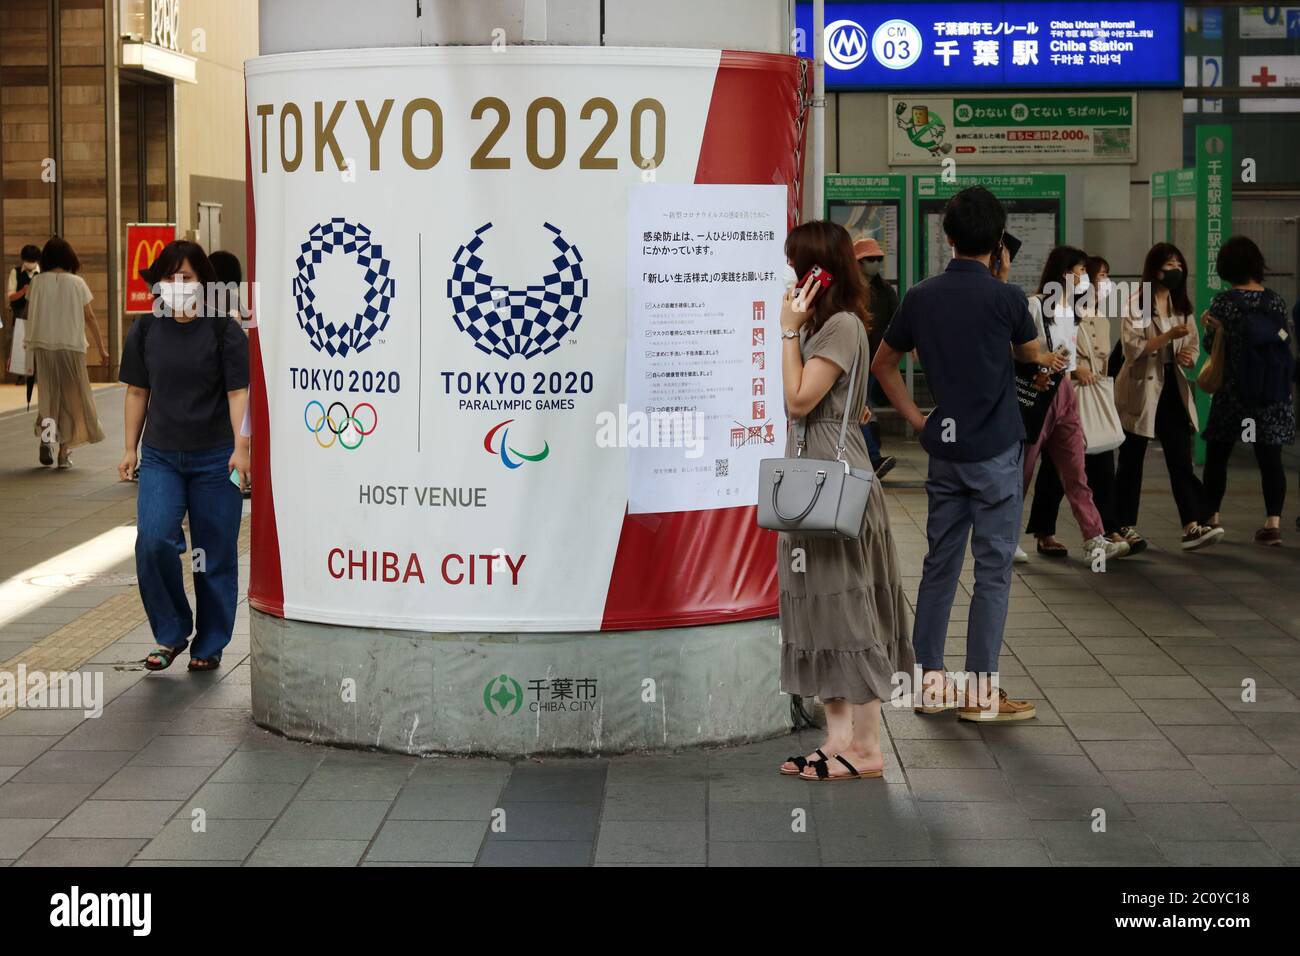 Una colonna avvolta di fronte alla stazione di Chiba con il logo delle Olimpiadi di Tokyo e un poster con consigli sulle misure di sicurezza dei coronavirus. Le persone indossano maschere facciali. Foto Stock